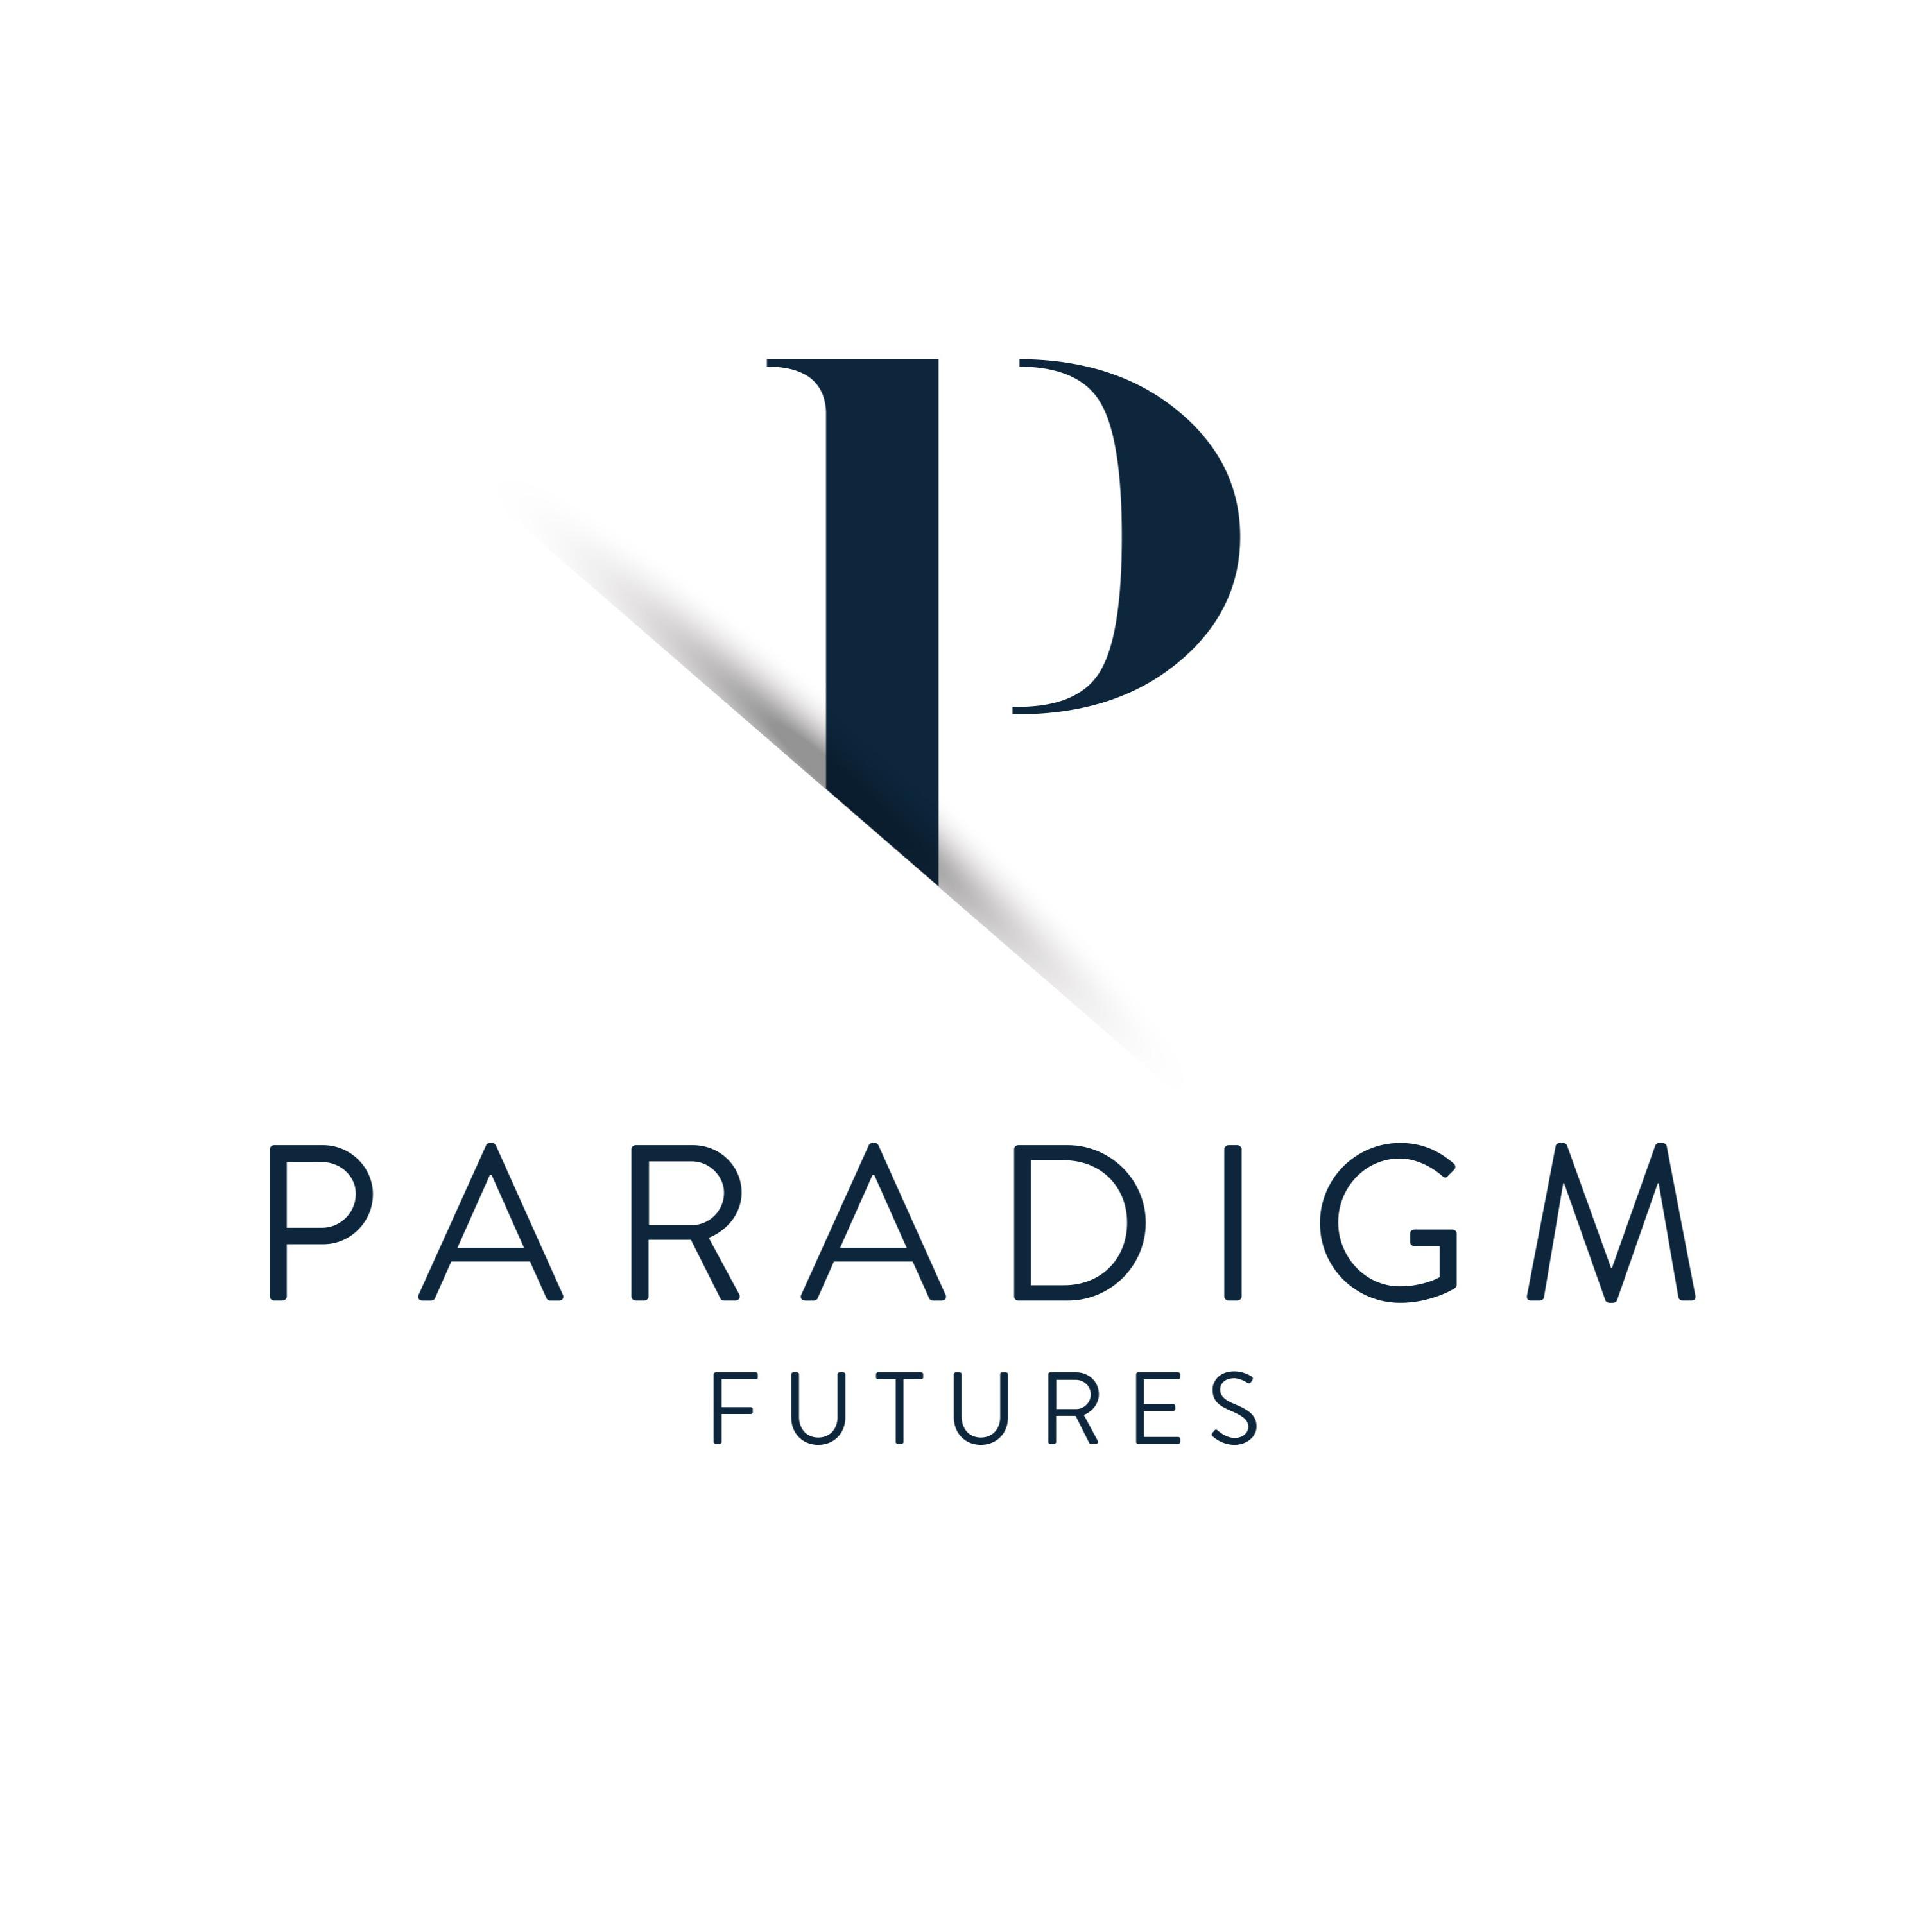 Paradigm Futures